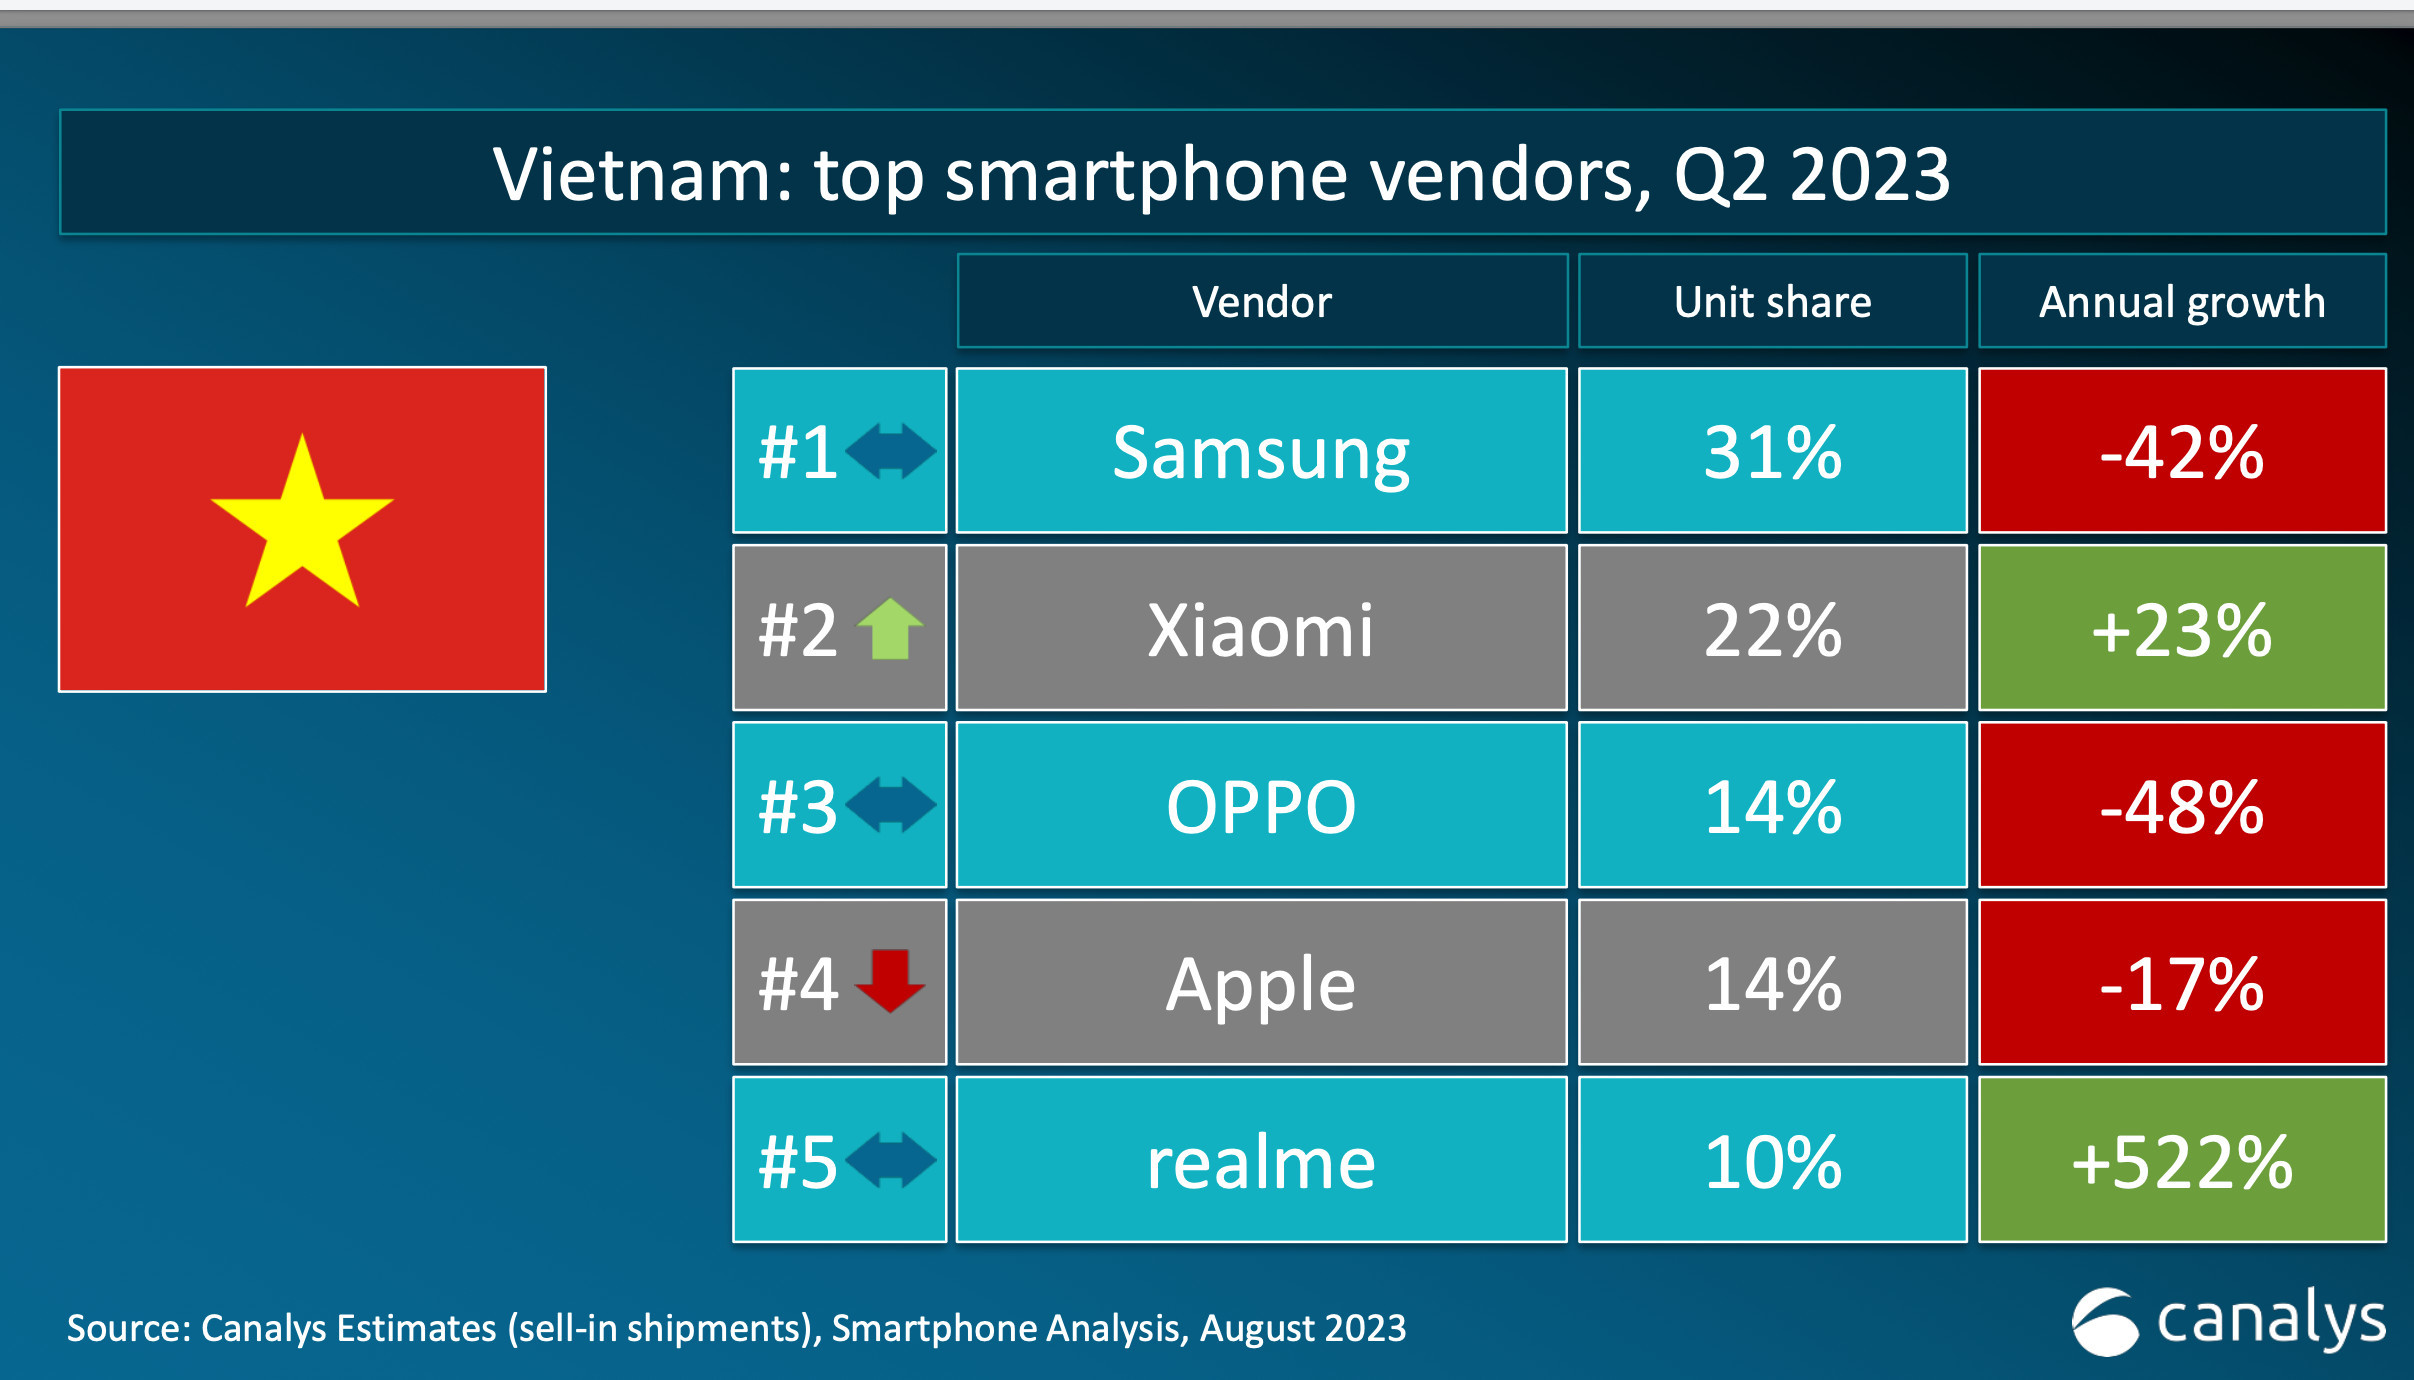 realme vào top 5 thương hiệu công nghệ tại Việt Nam có mức tăng trưởng cao nhất quý II/2023 - Hinh 2 5 1